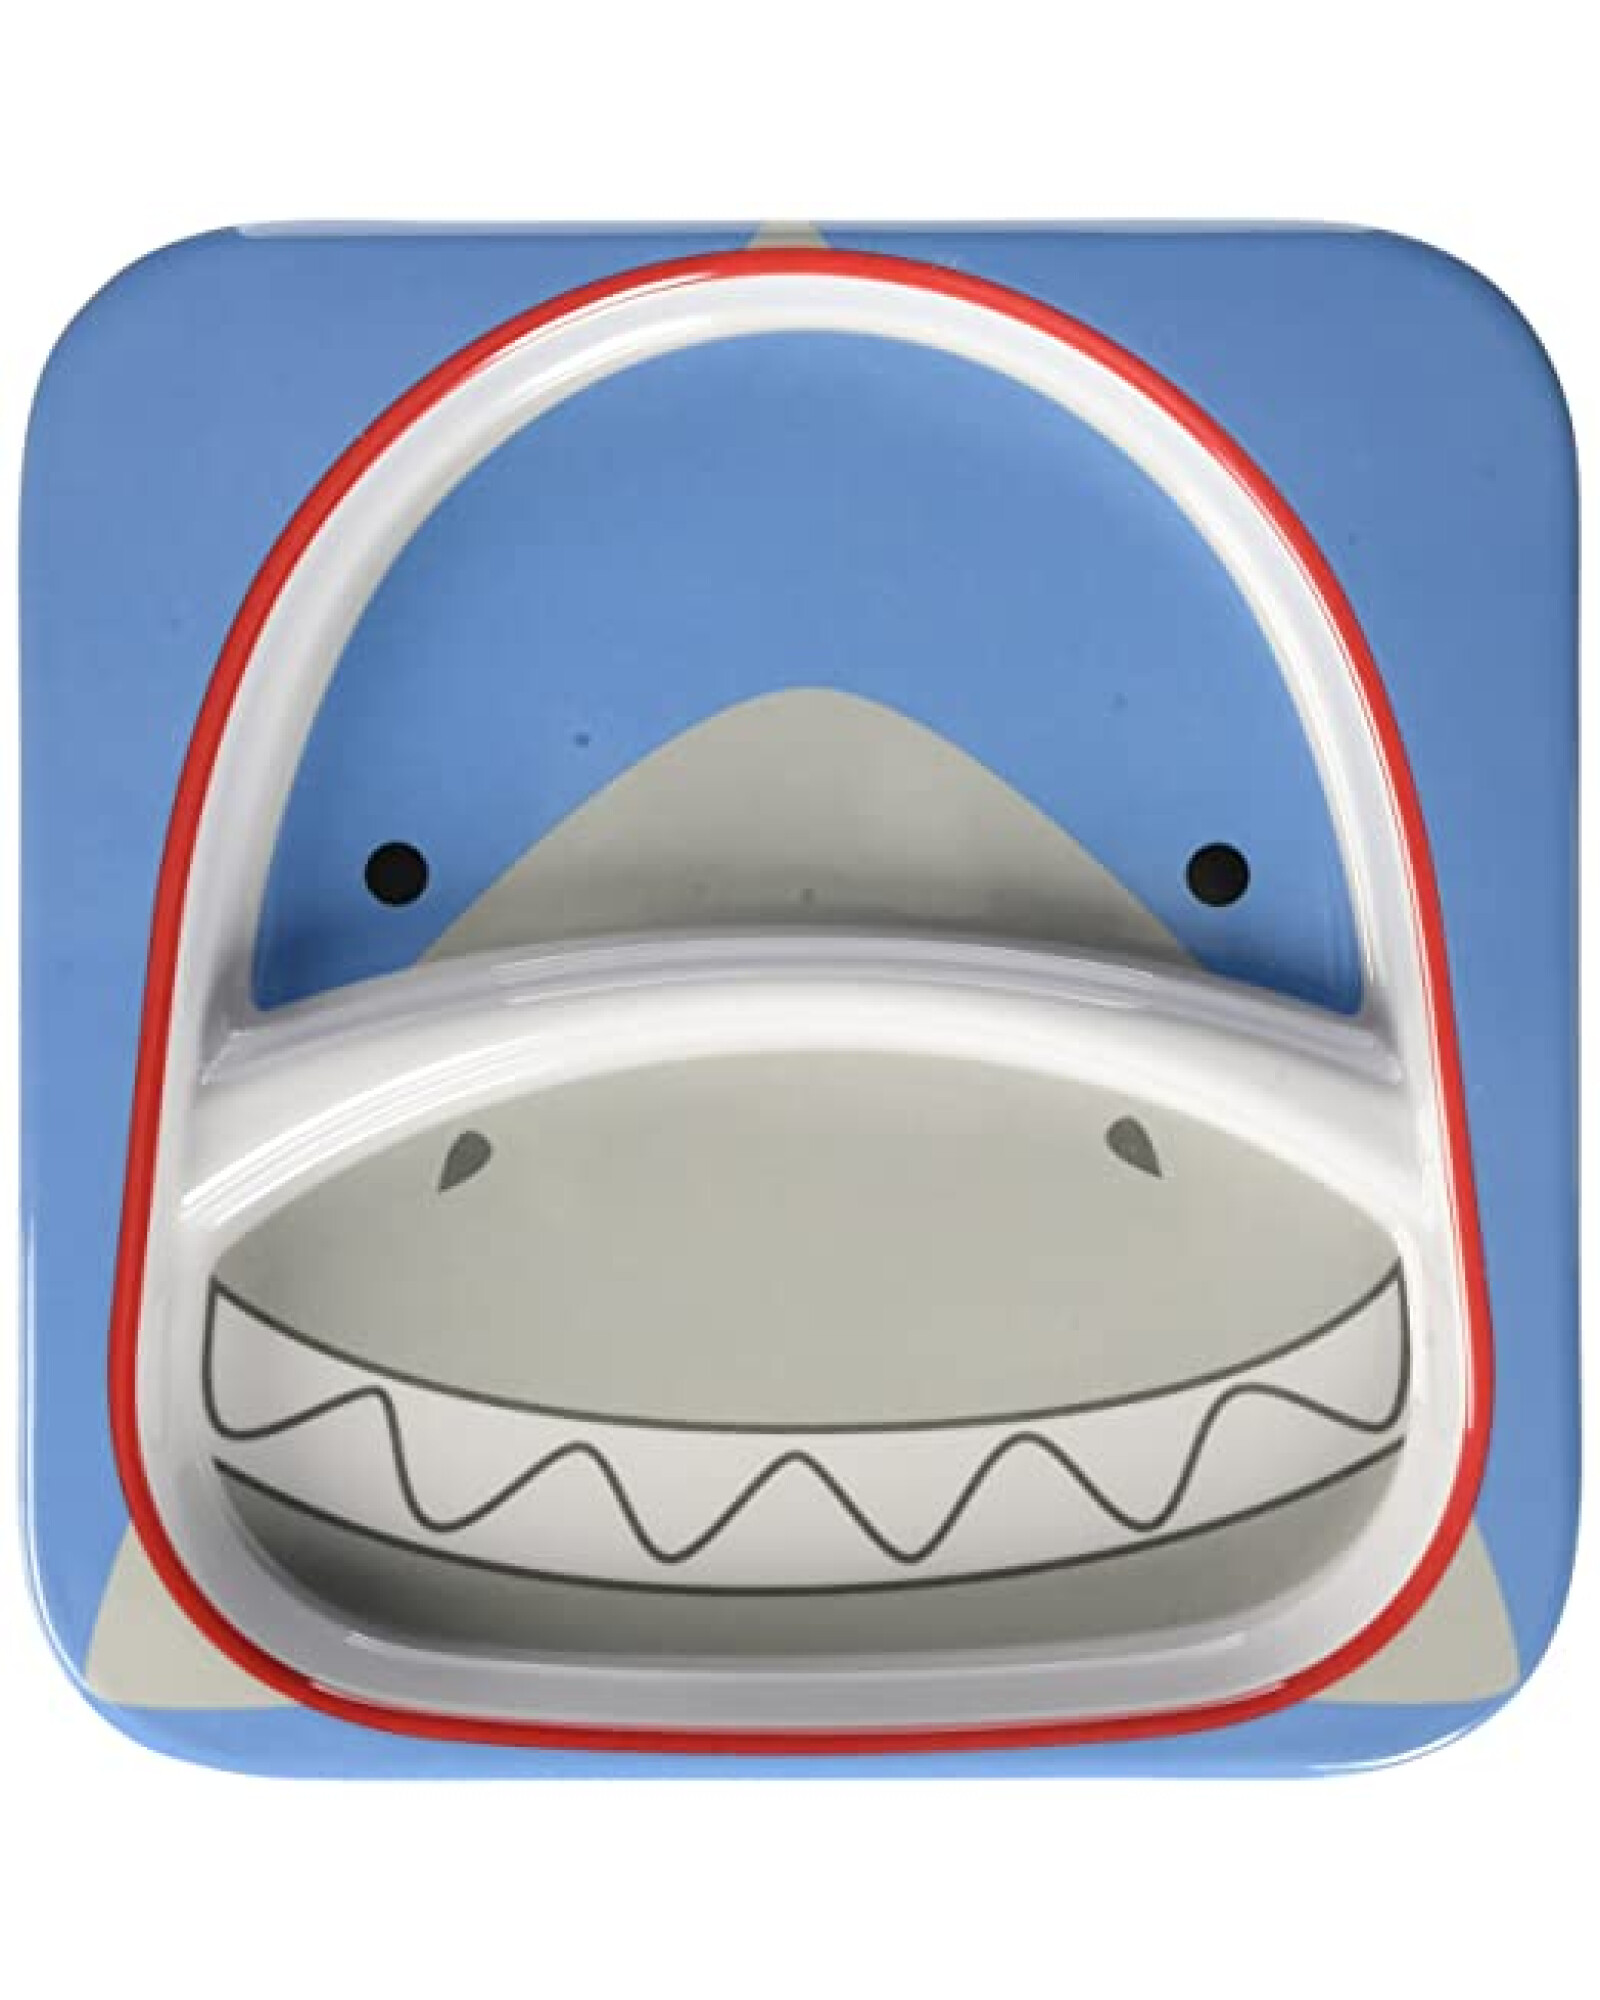 Plato con división diseño tiburón 0